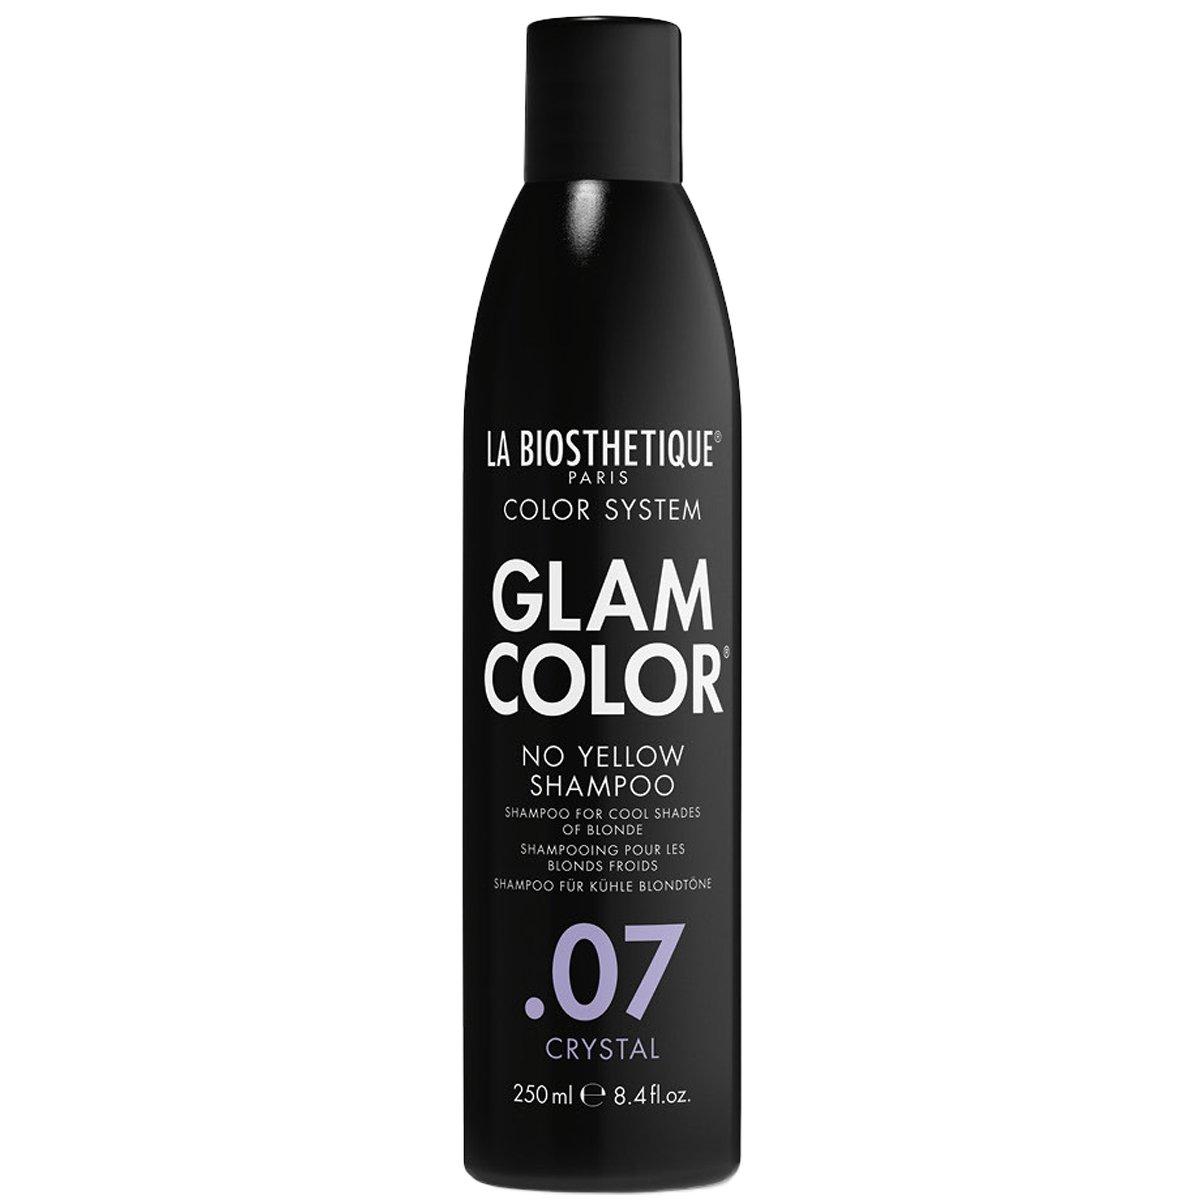 La Biosthetique Glam Color No Yellow Shampoo .07 Crystal - Безсульфатный шампунь для окрашенных волос, 250 мл